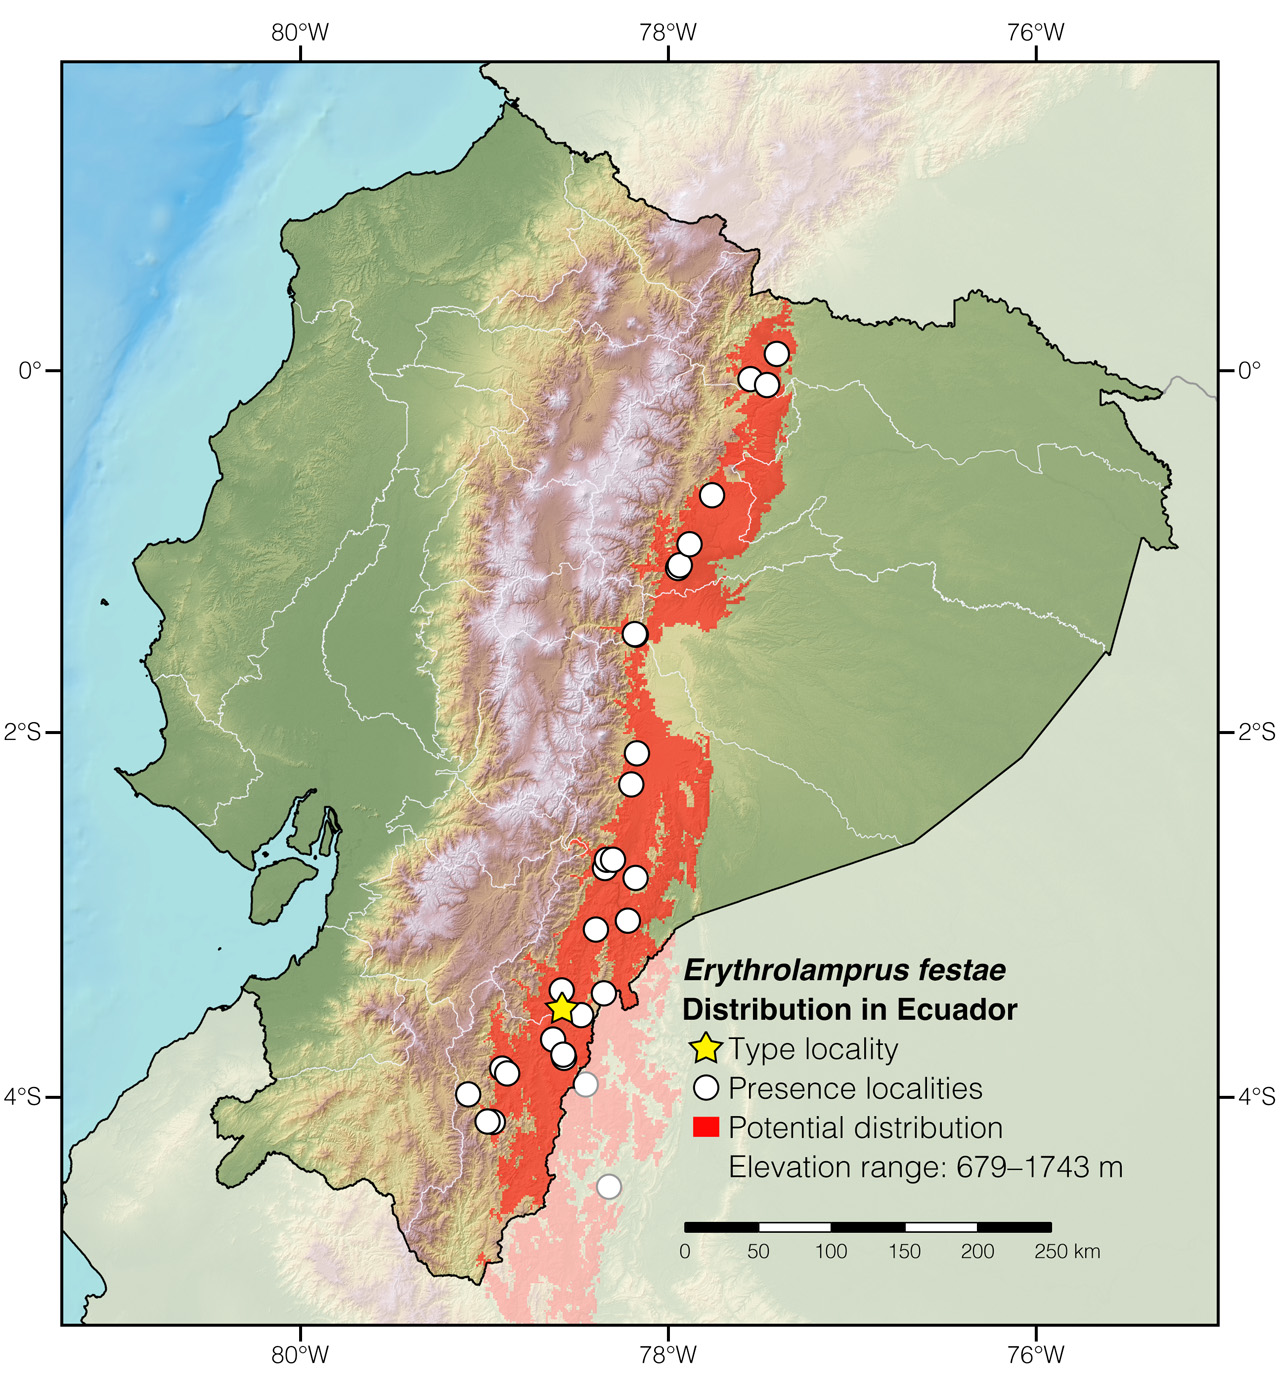 Distribution of Erythrolamprus festae in Ecuador